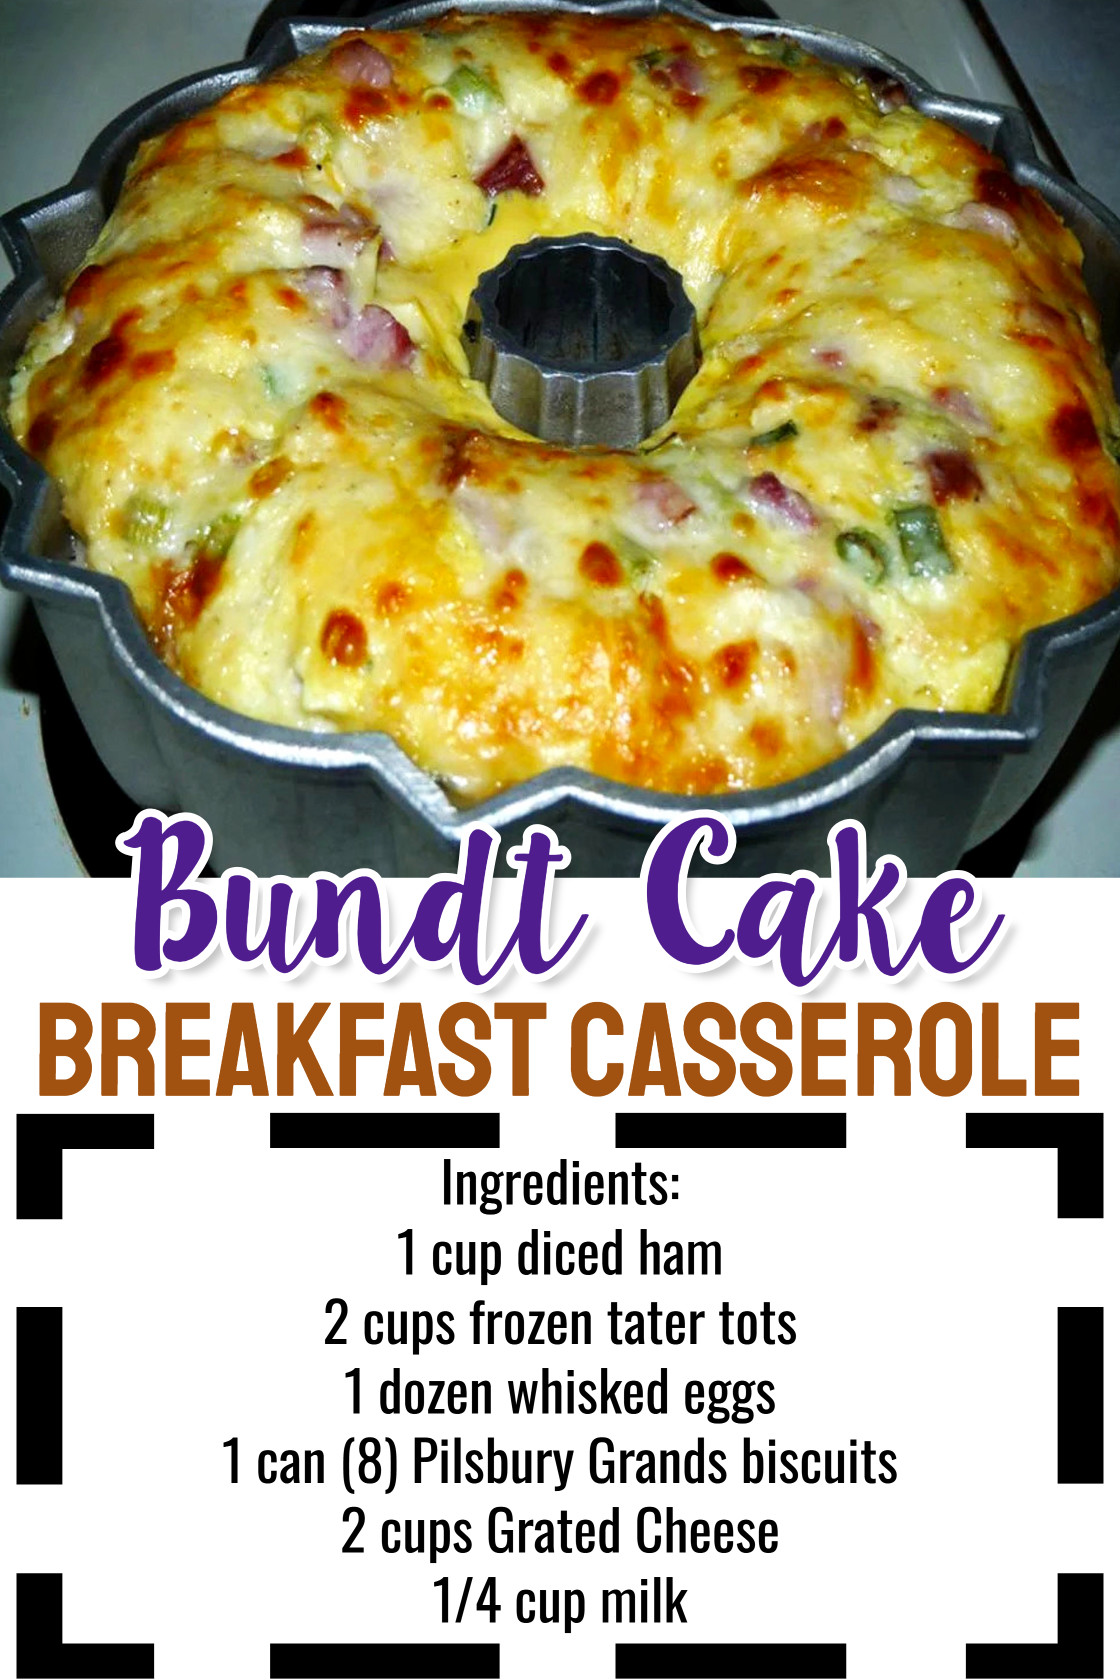 Bundt Cake Breakfast Casserole Recipe ingredients